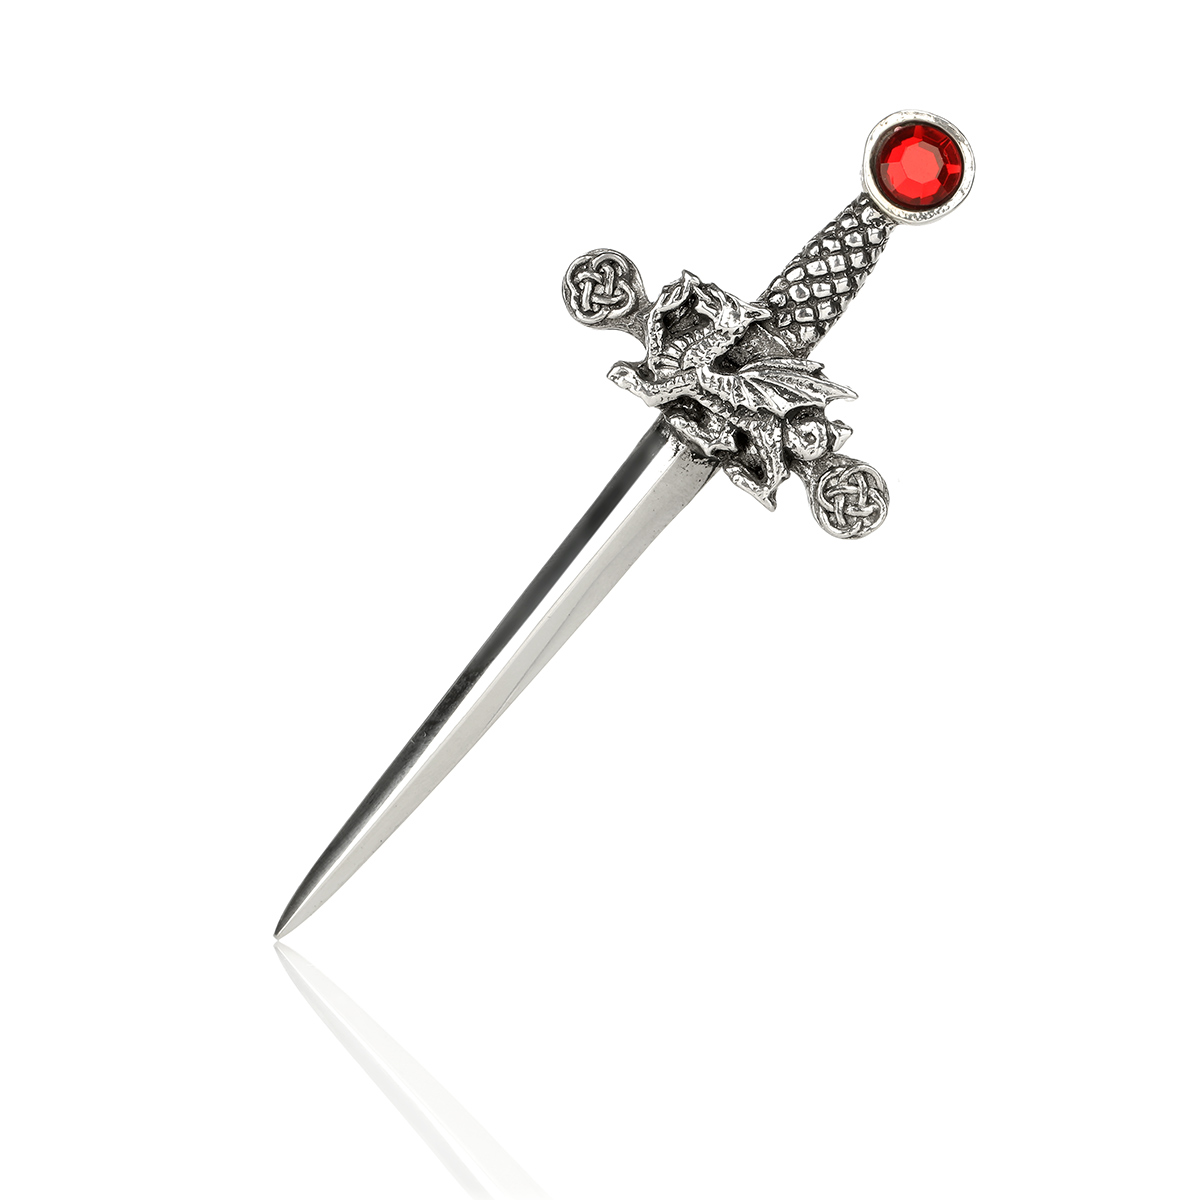 Welsh Dragon & Sword - Handgefertigter Kilt Pin mit dem walisischen Drachen